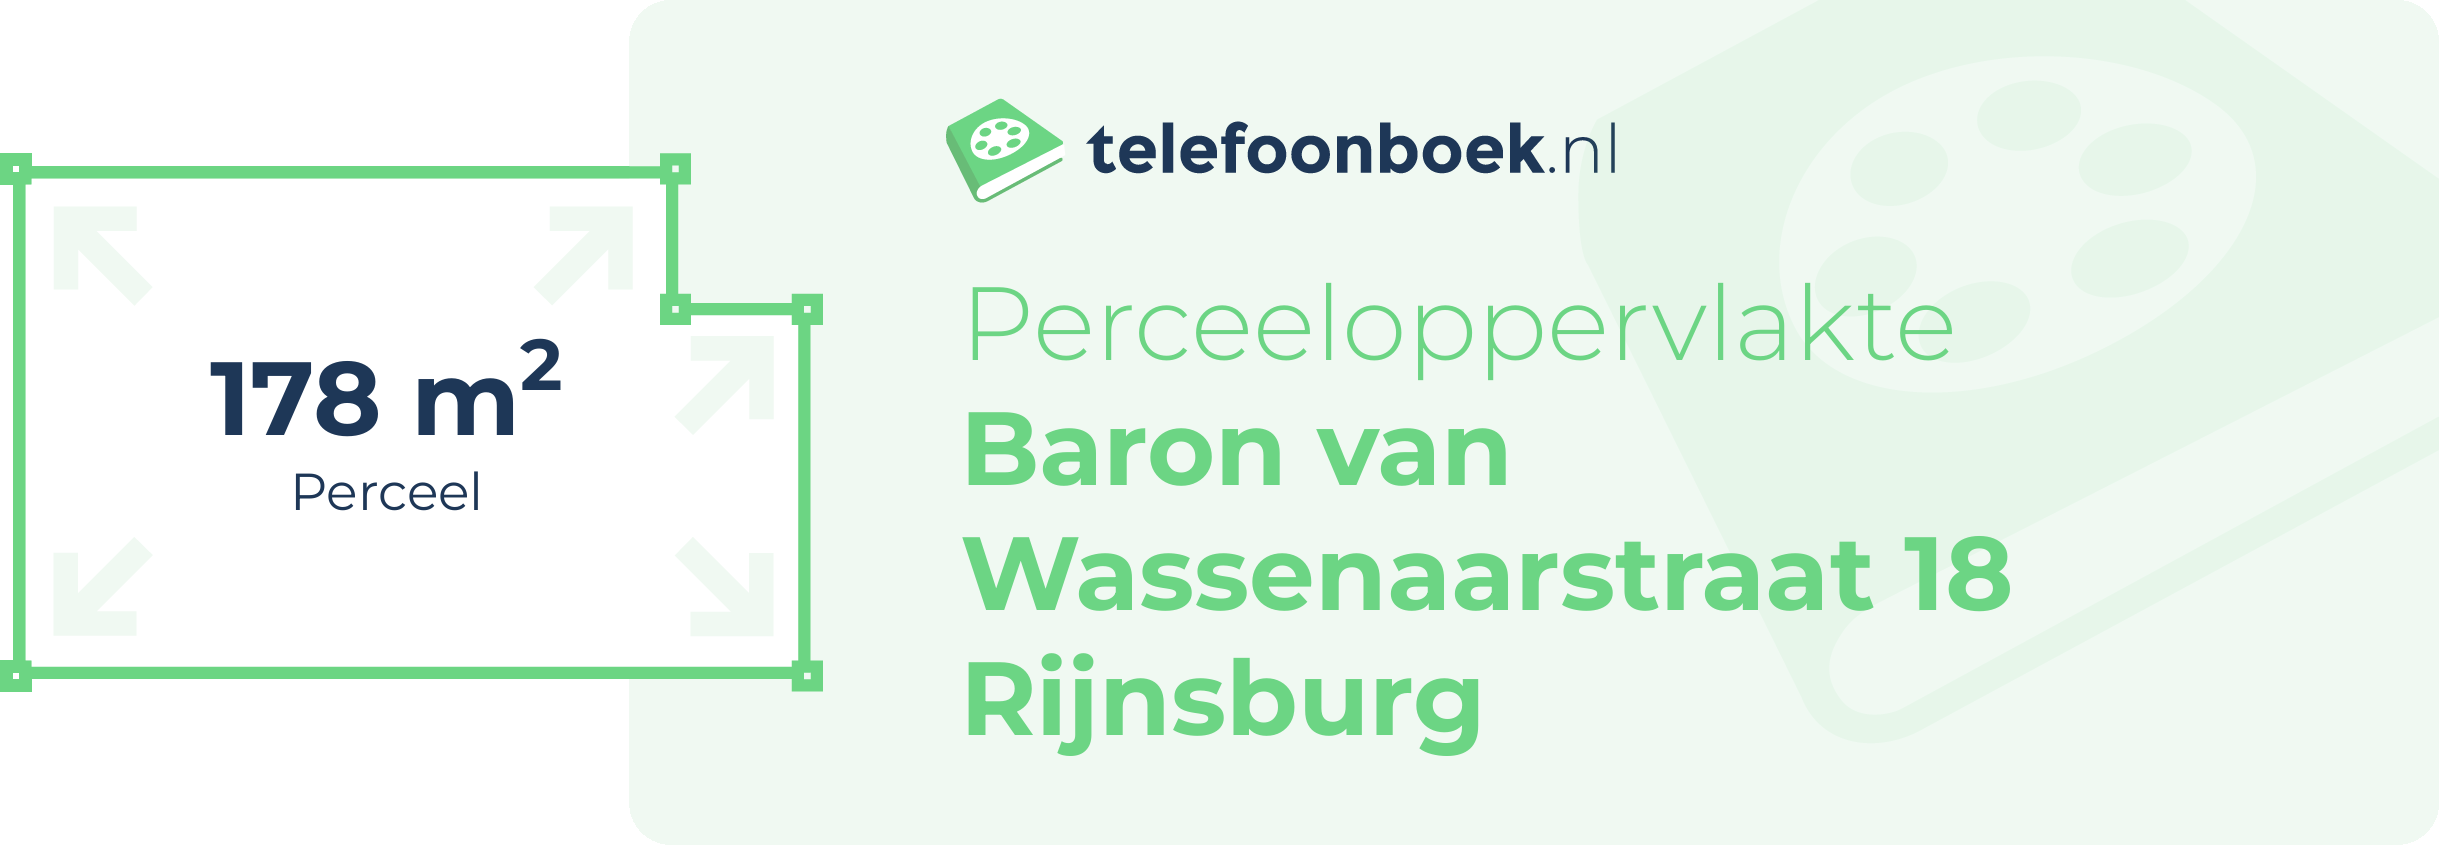 Perceeloppervlakte Baron Van Wassenaarstraat 18 Rijnsburg